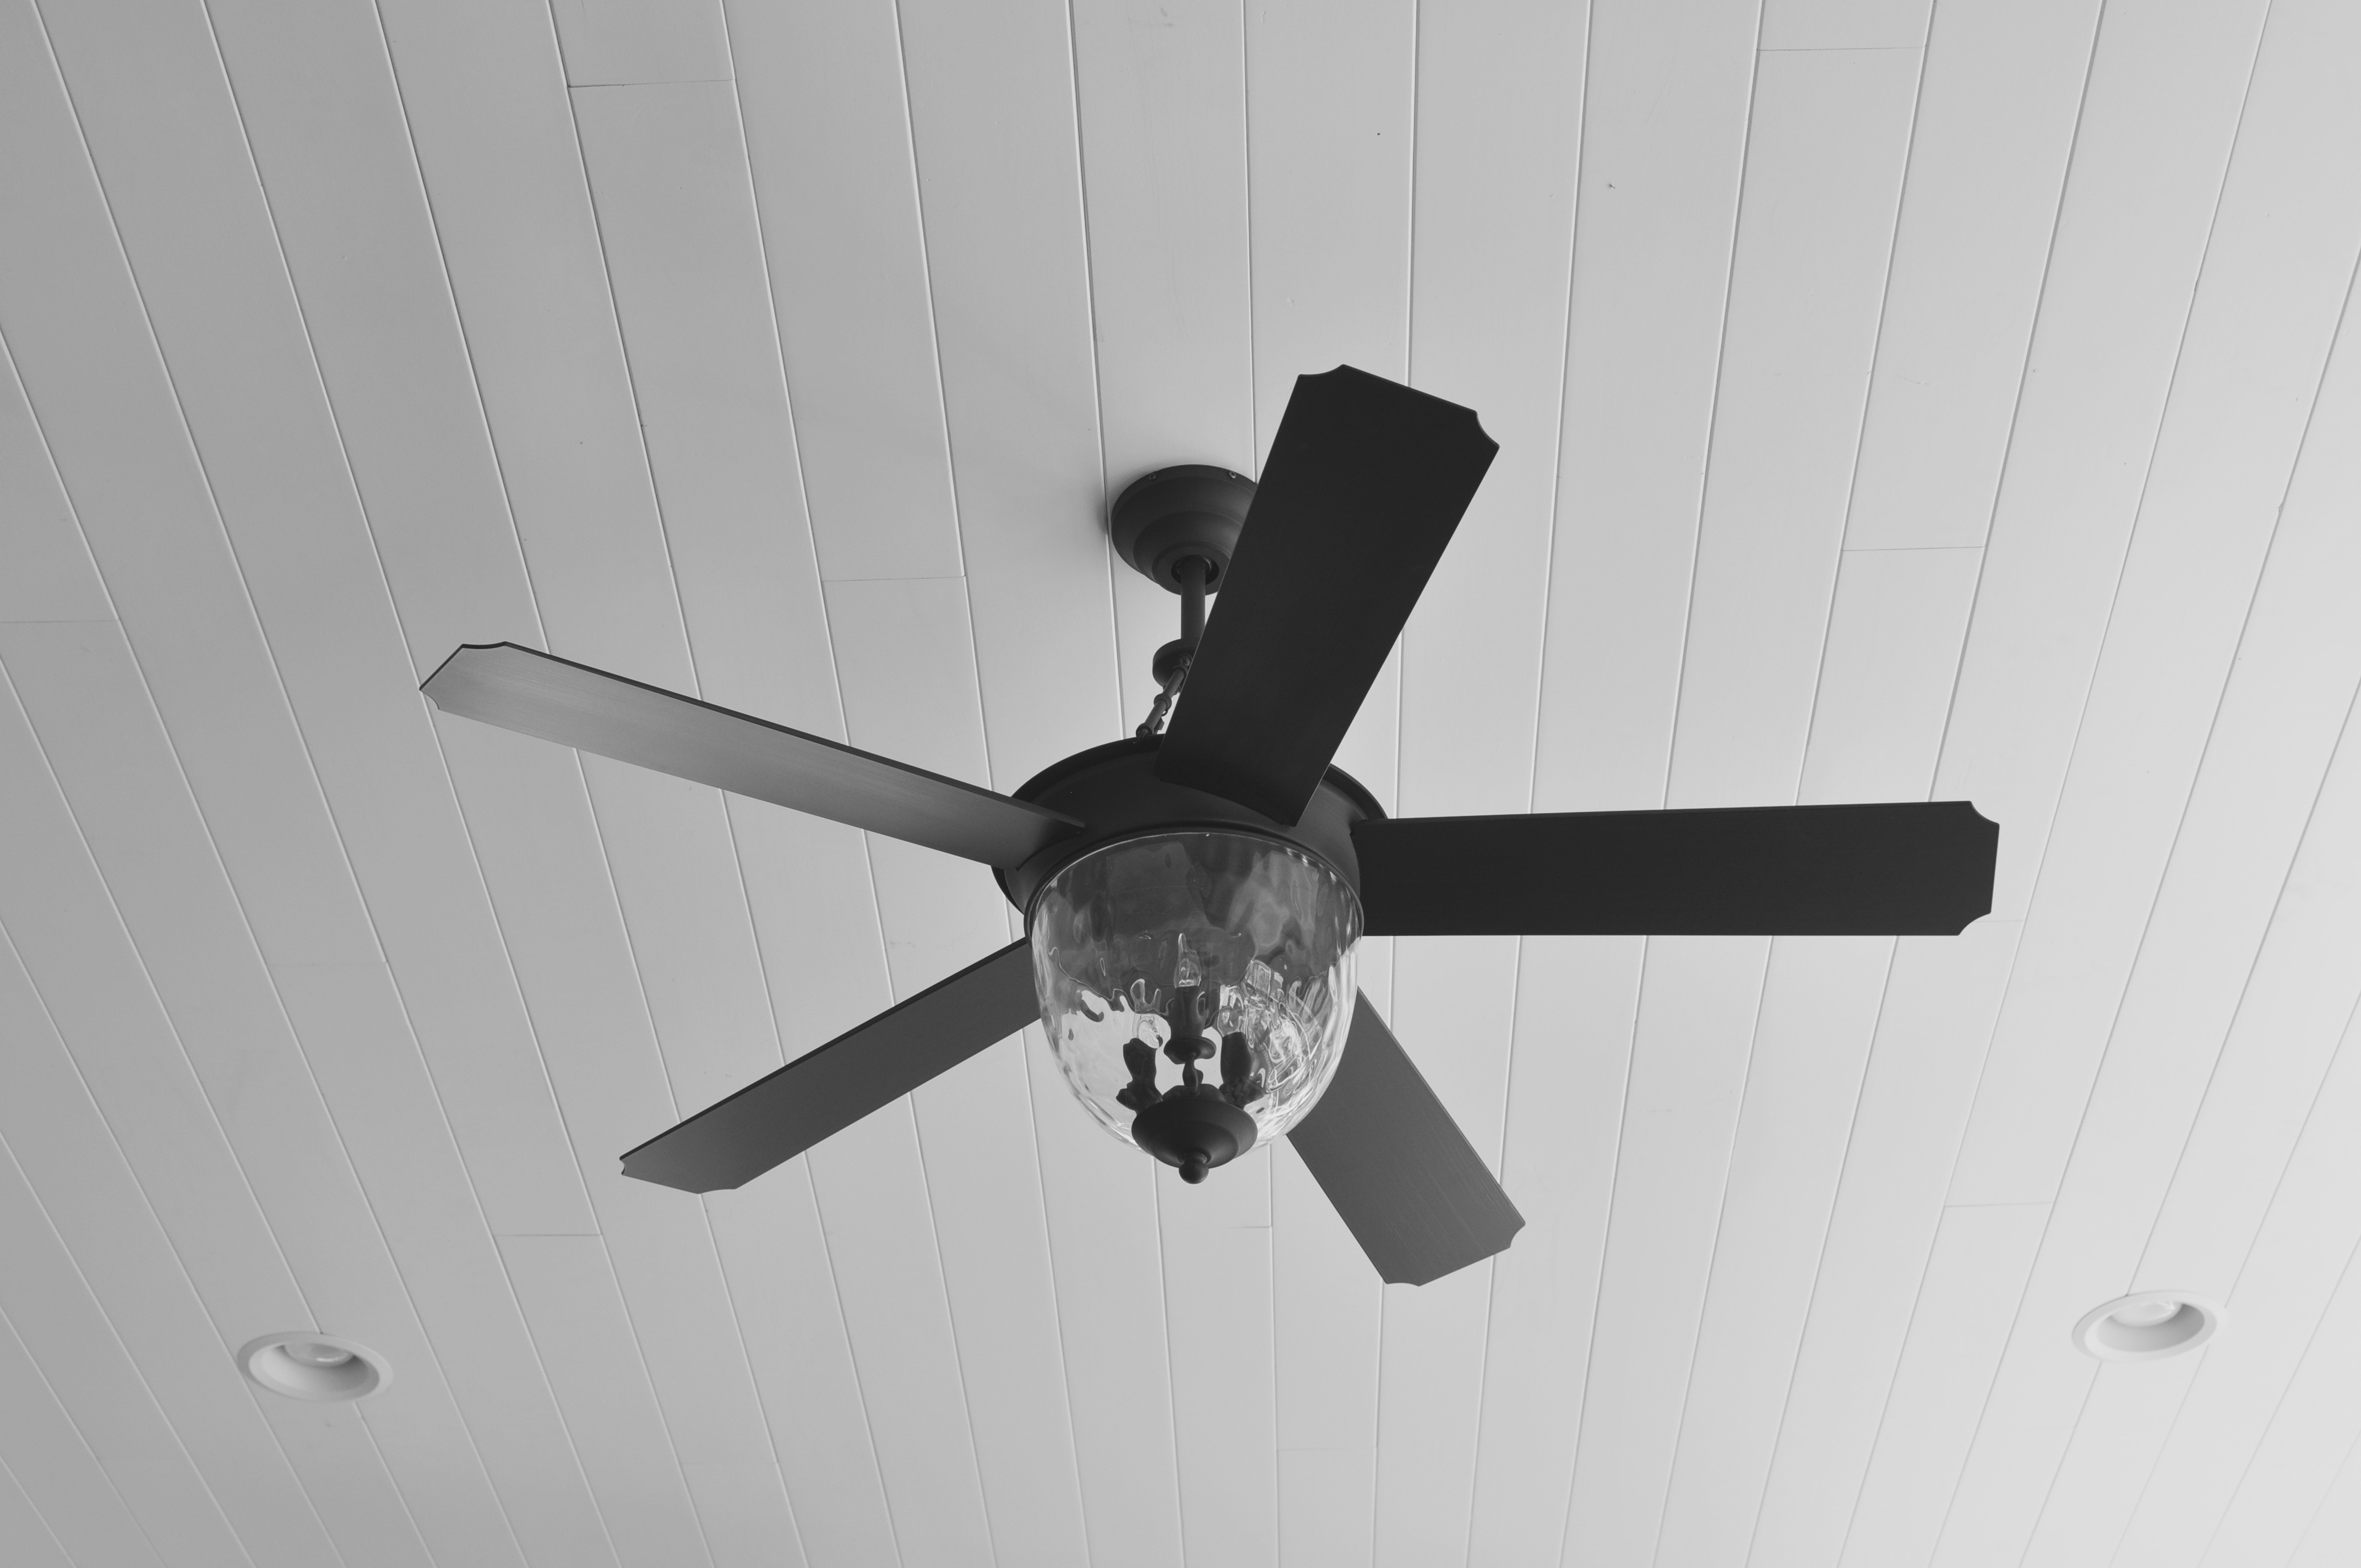 Remote Control Ceiling Fan